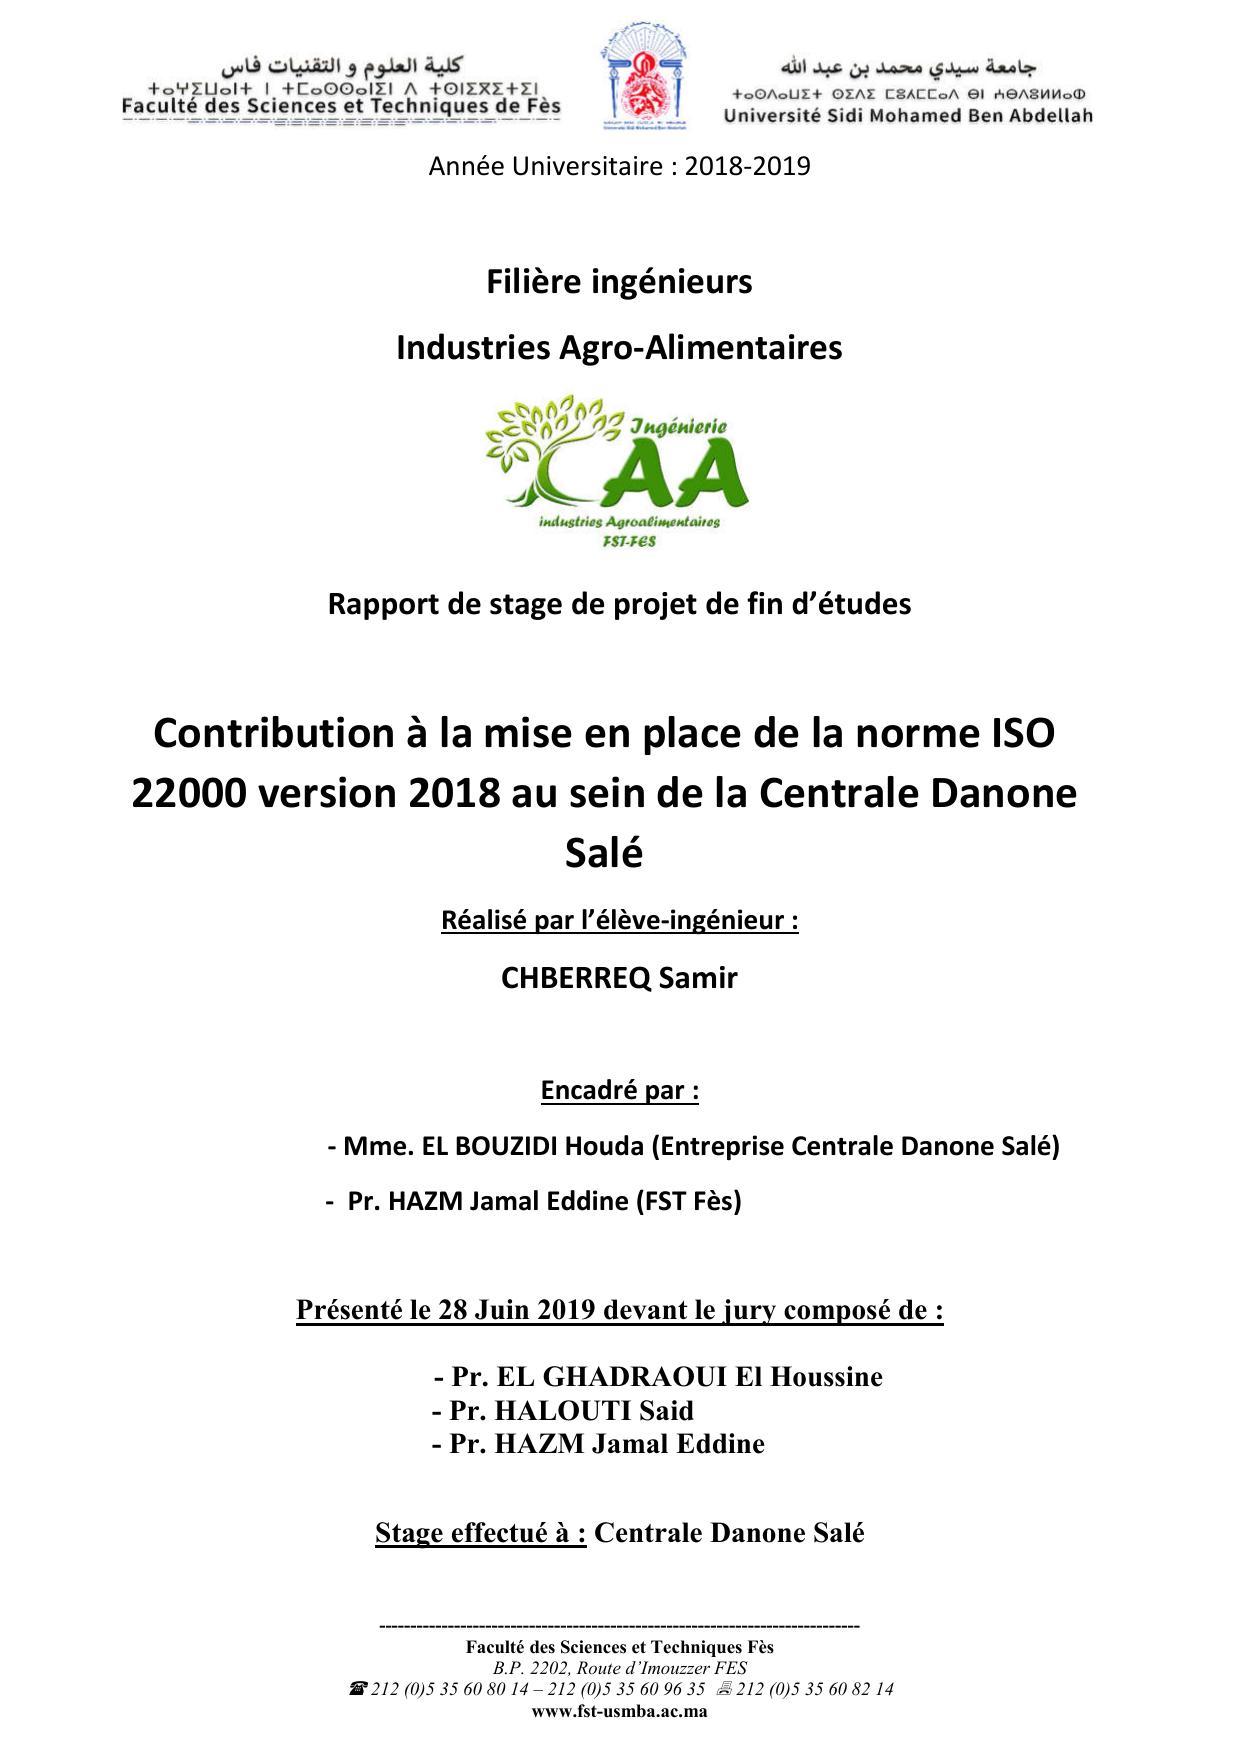 Contribution à la mise en place de la norme ISO 22000 version 2018 au sein de la Centrale Danone Salé